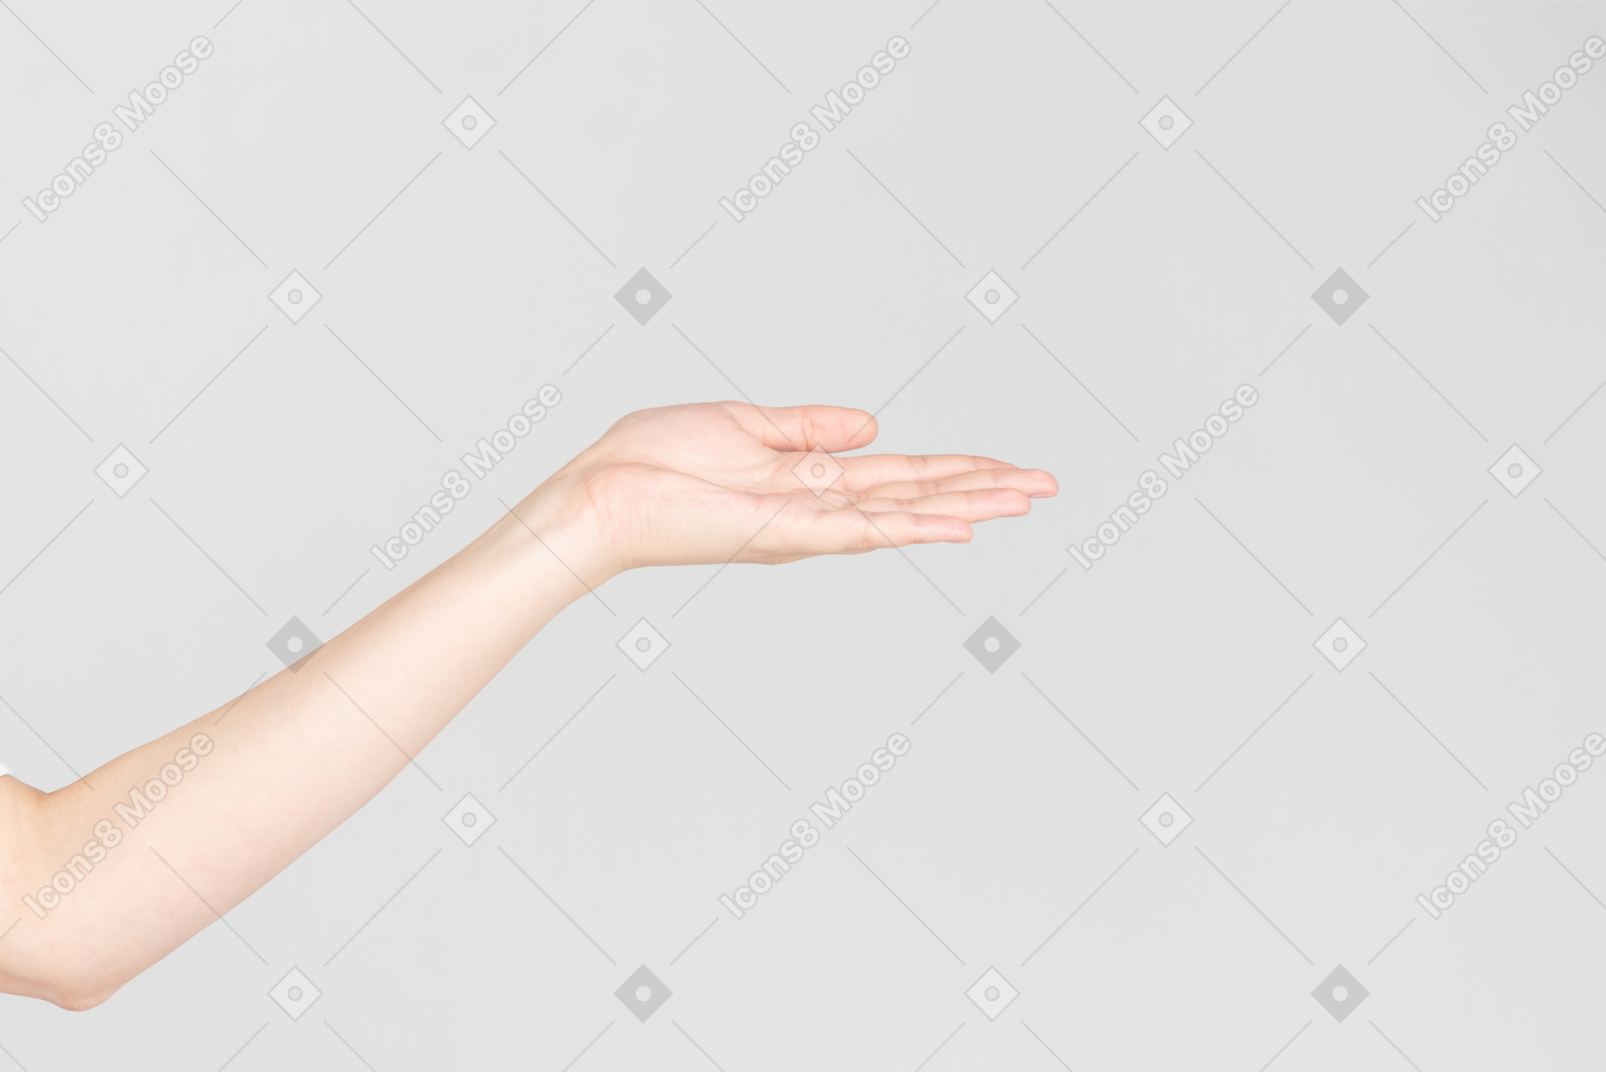 Mirada lateral de la mano femenina mostrando la palma de la mano